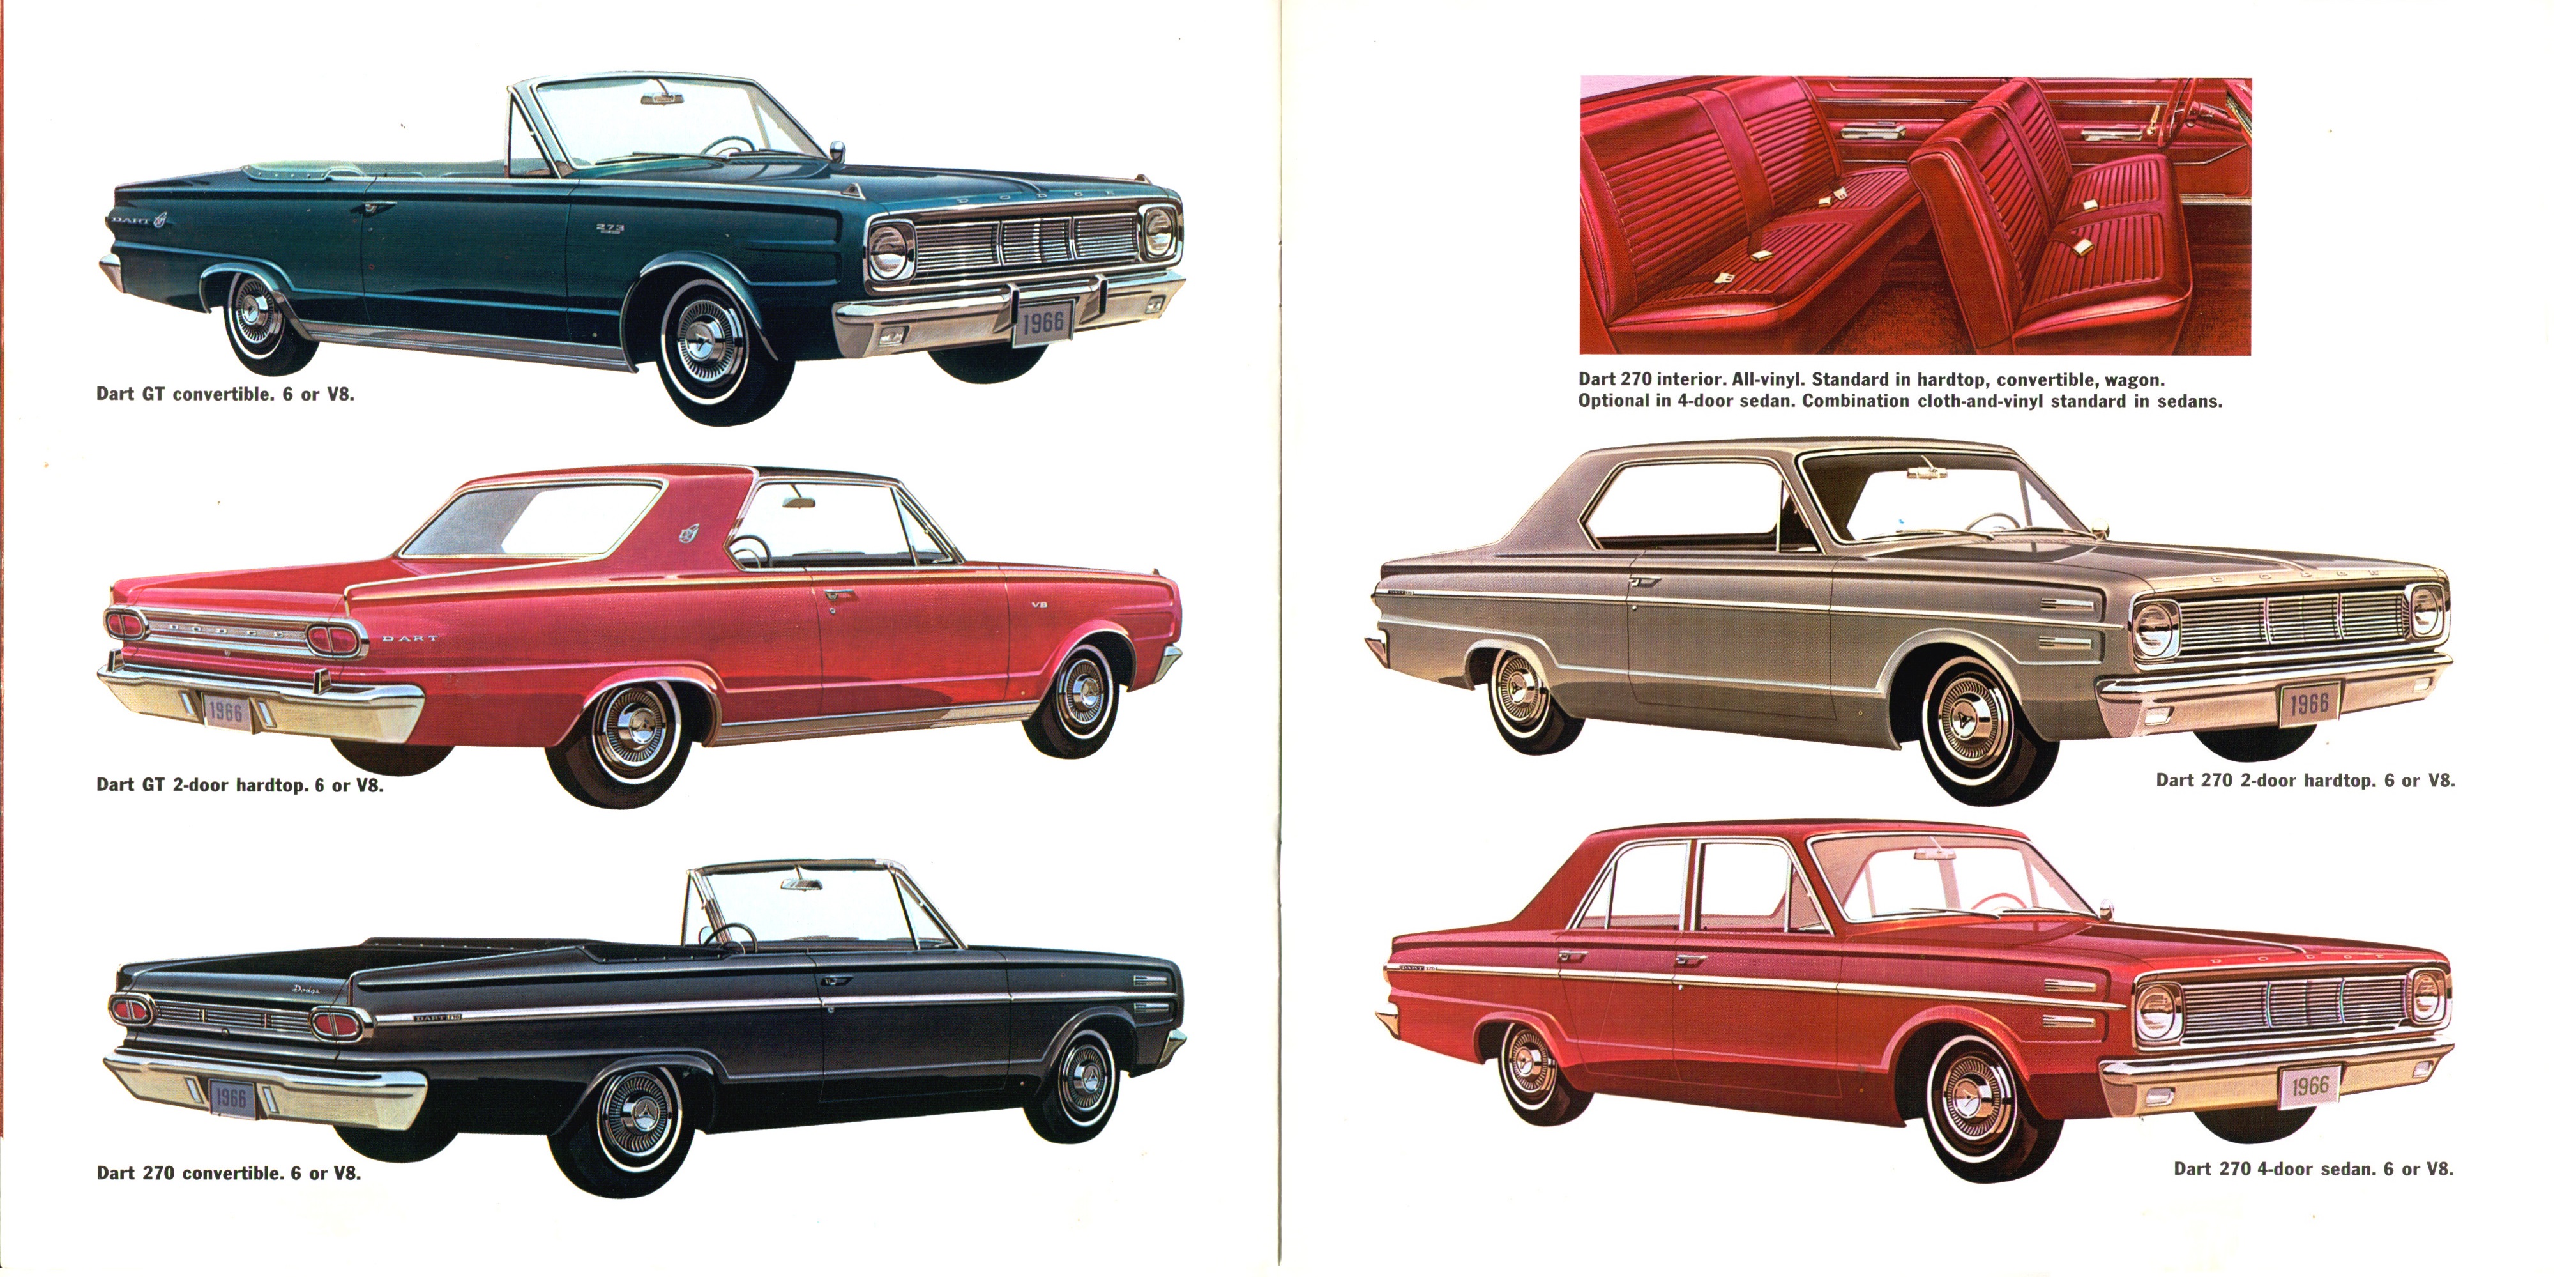 1966 Dodge Dart Brochure 12-13